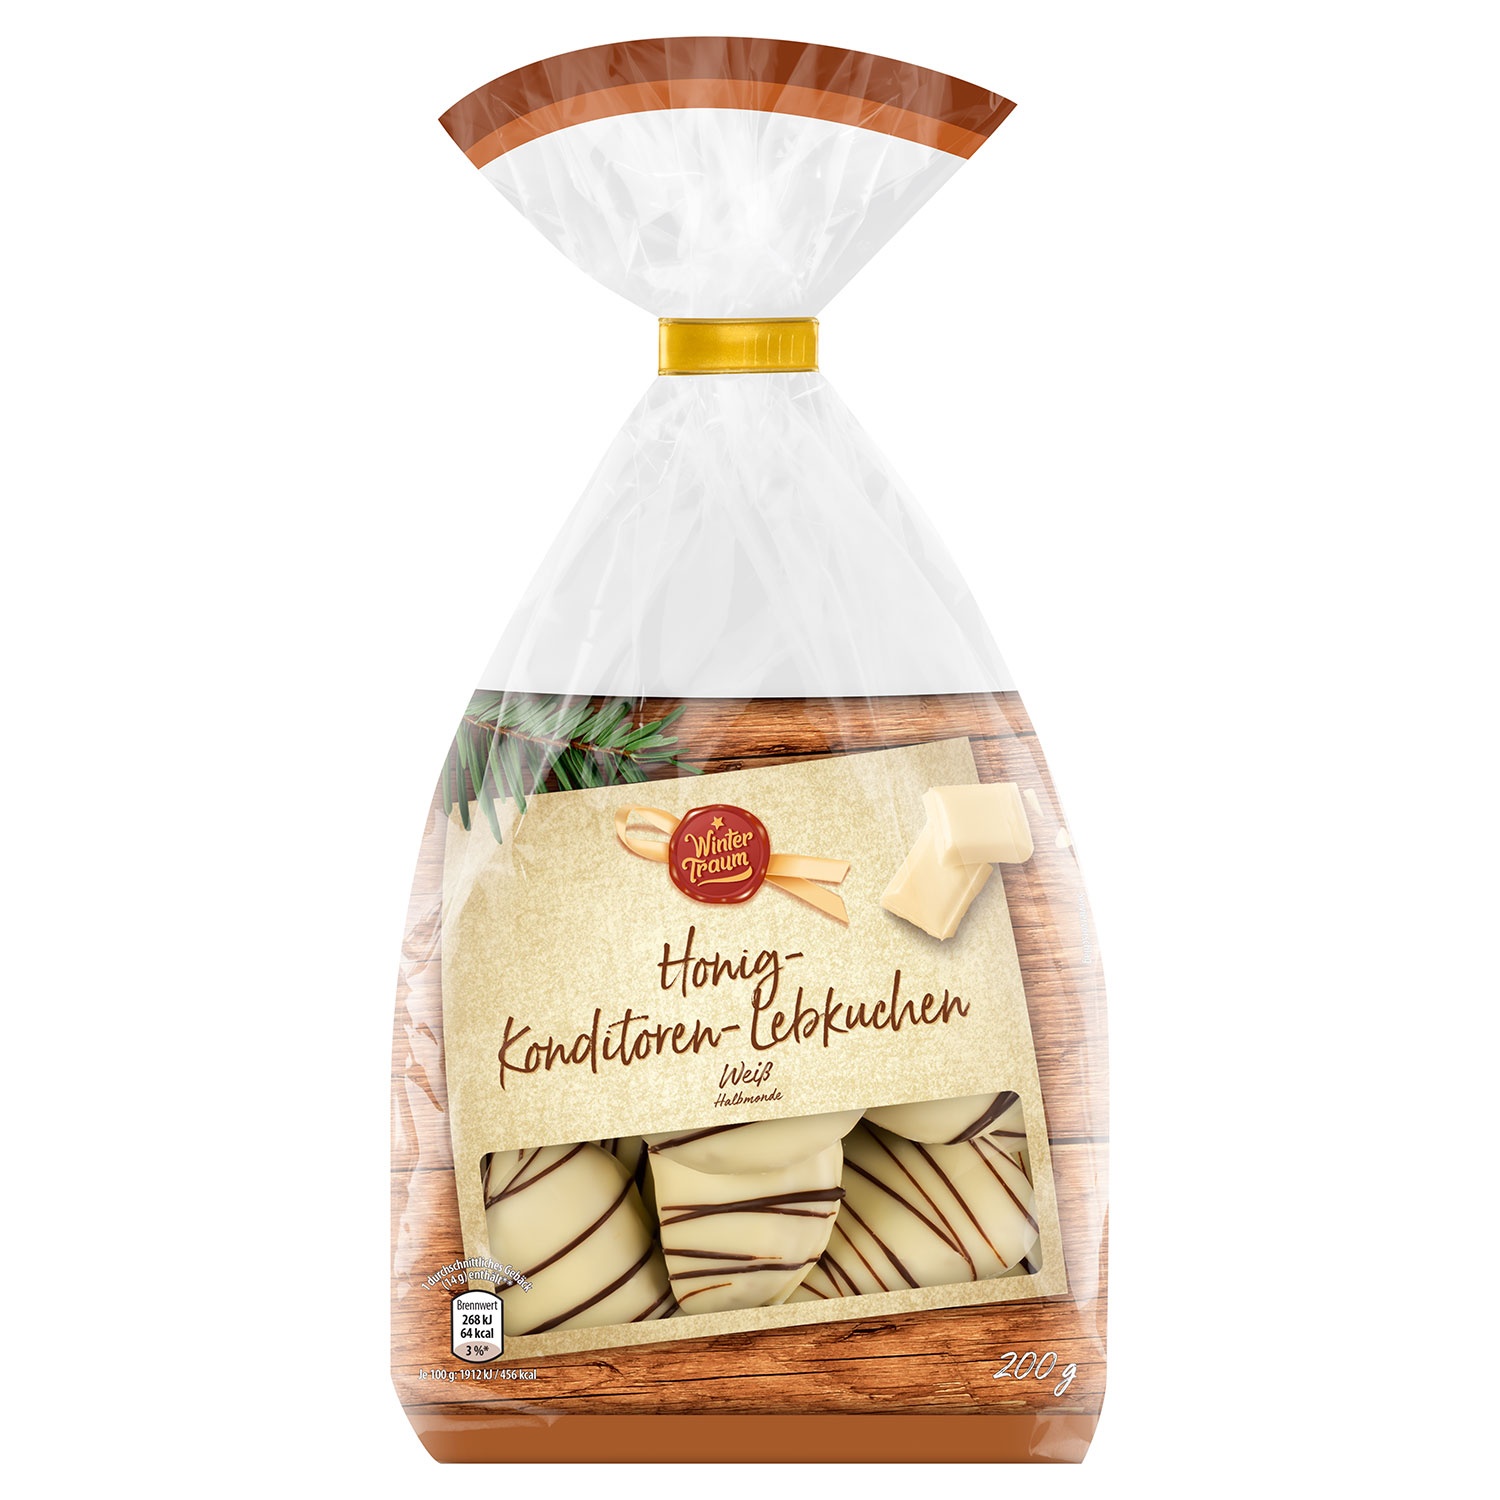 WINTERTRAUM Honig-Konditoren-Lebkuchen 200 g